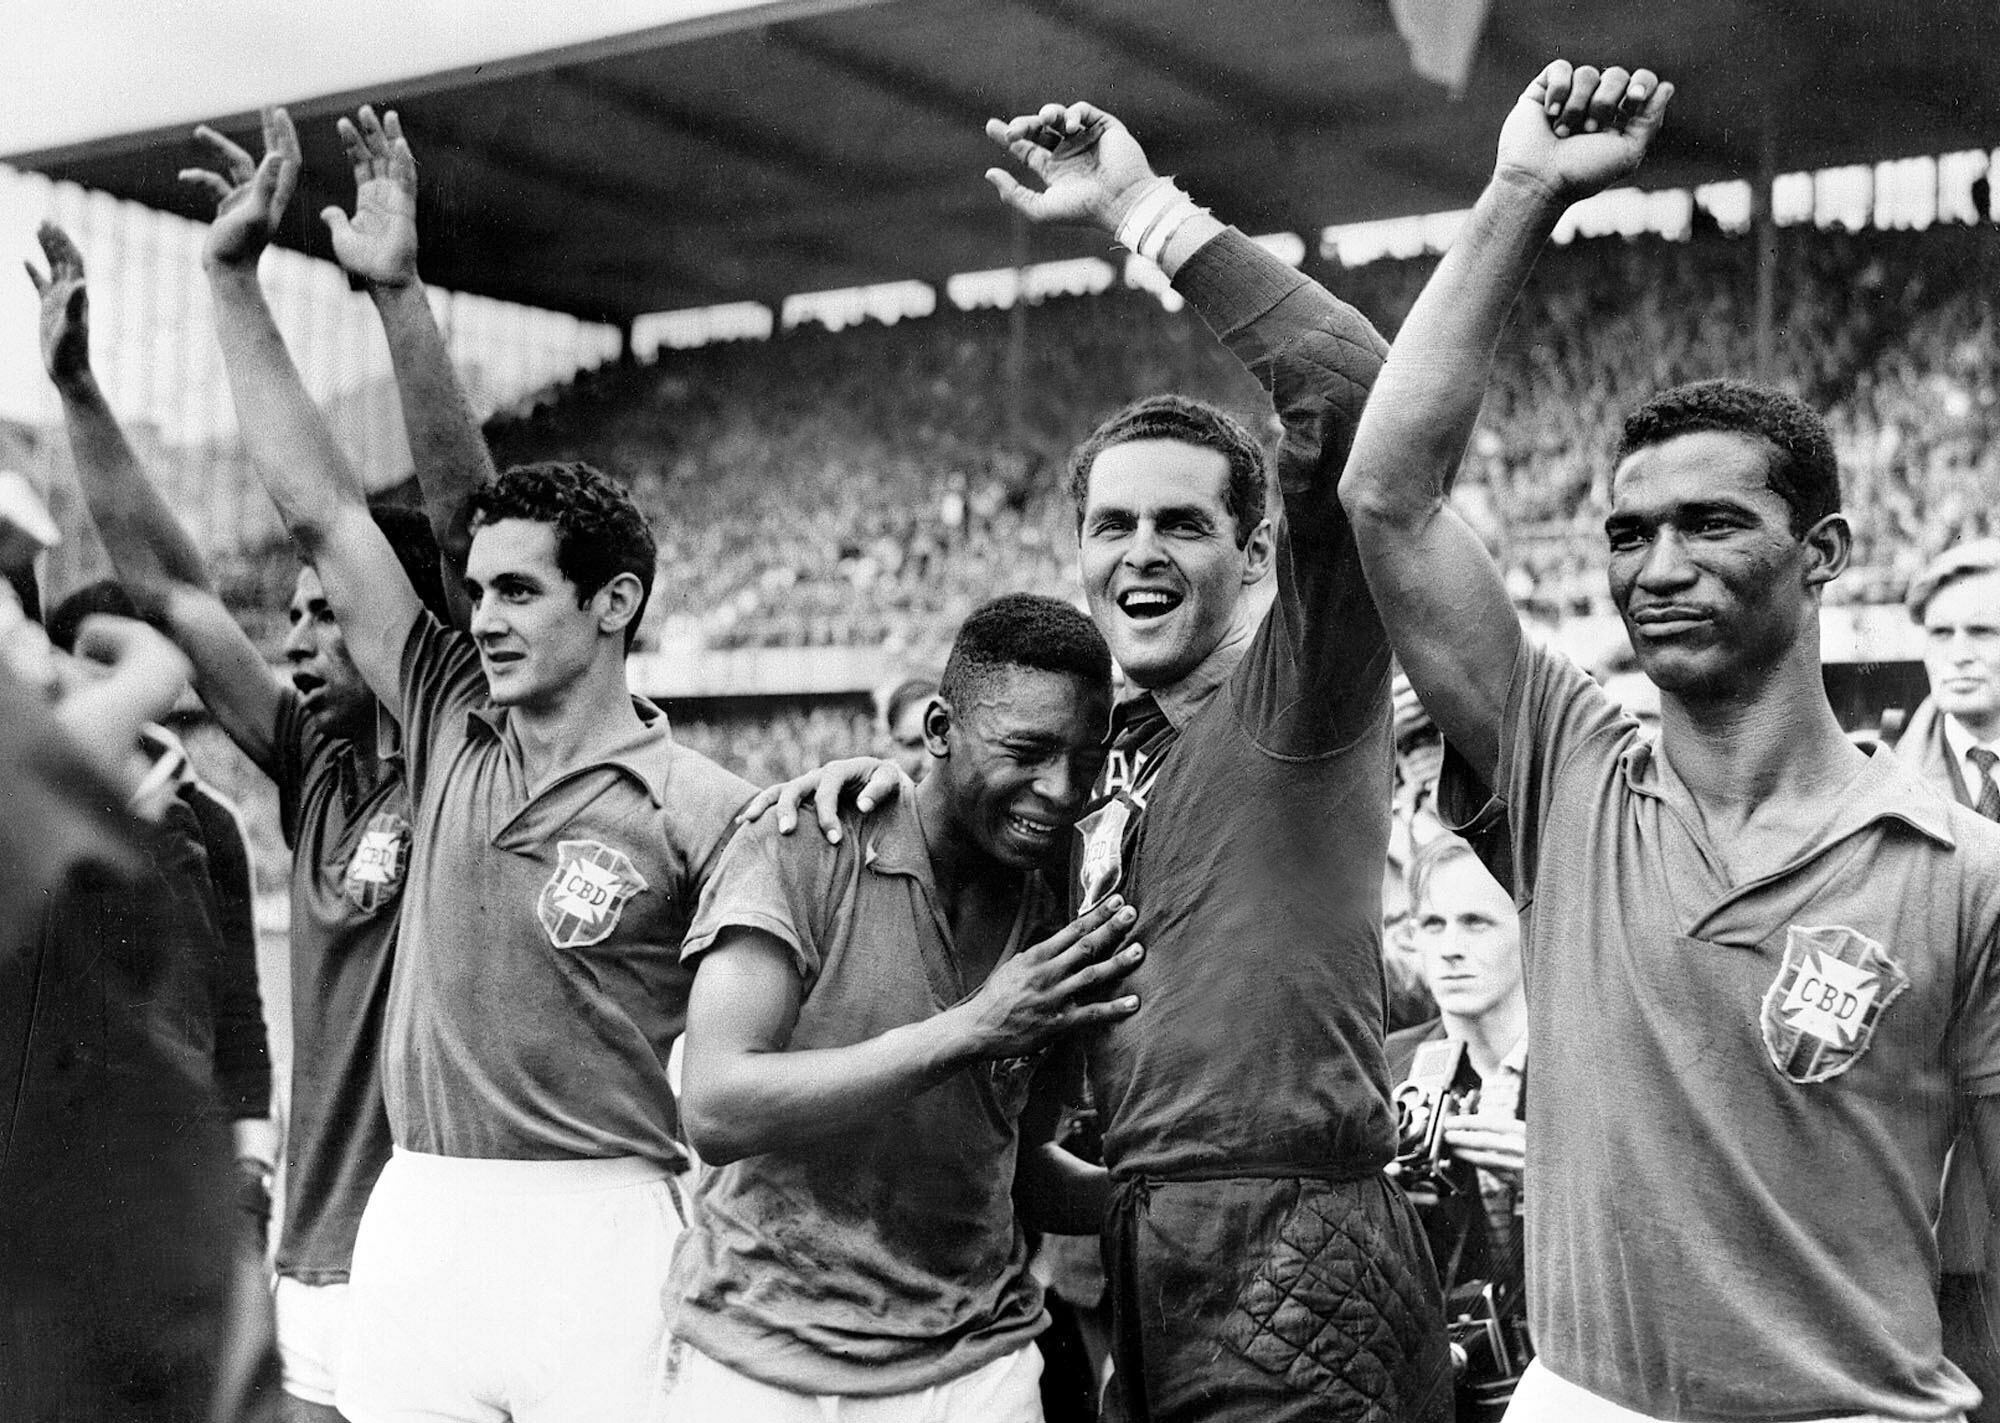 El jugador brasileño, entonces con 17 años, llora de alegría en el hombro del portero Gylmar dos Santos Naves, tras la victoria de Brasil (5) sobre Suecia (2) en la final del Mundial de Fútbol de Suecia, en Estocolmo, en 1958.